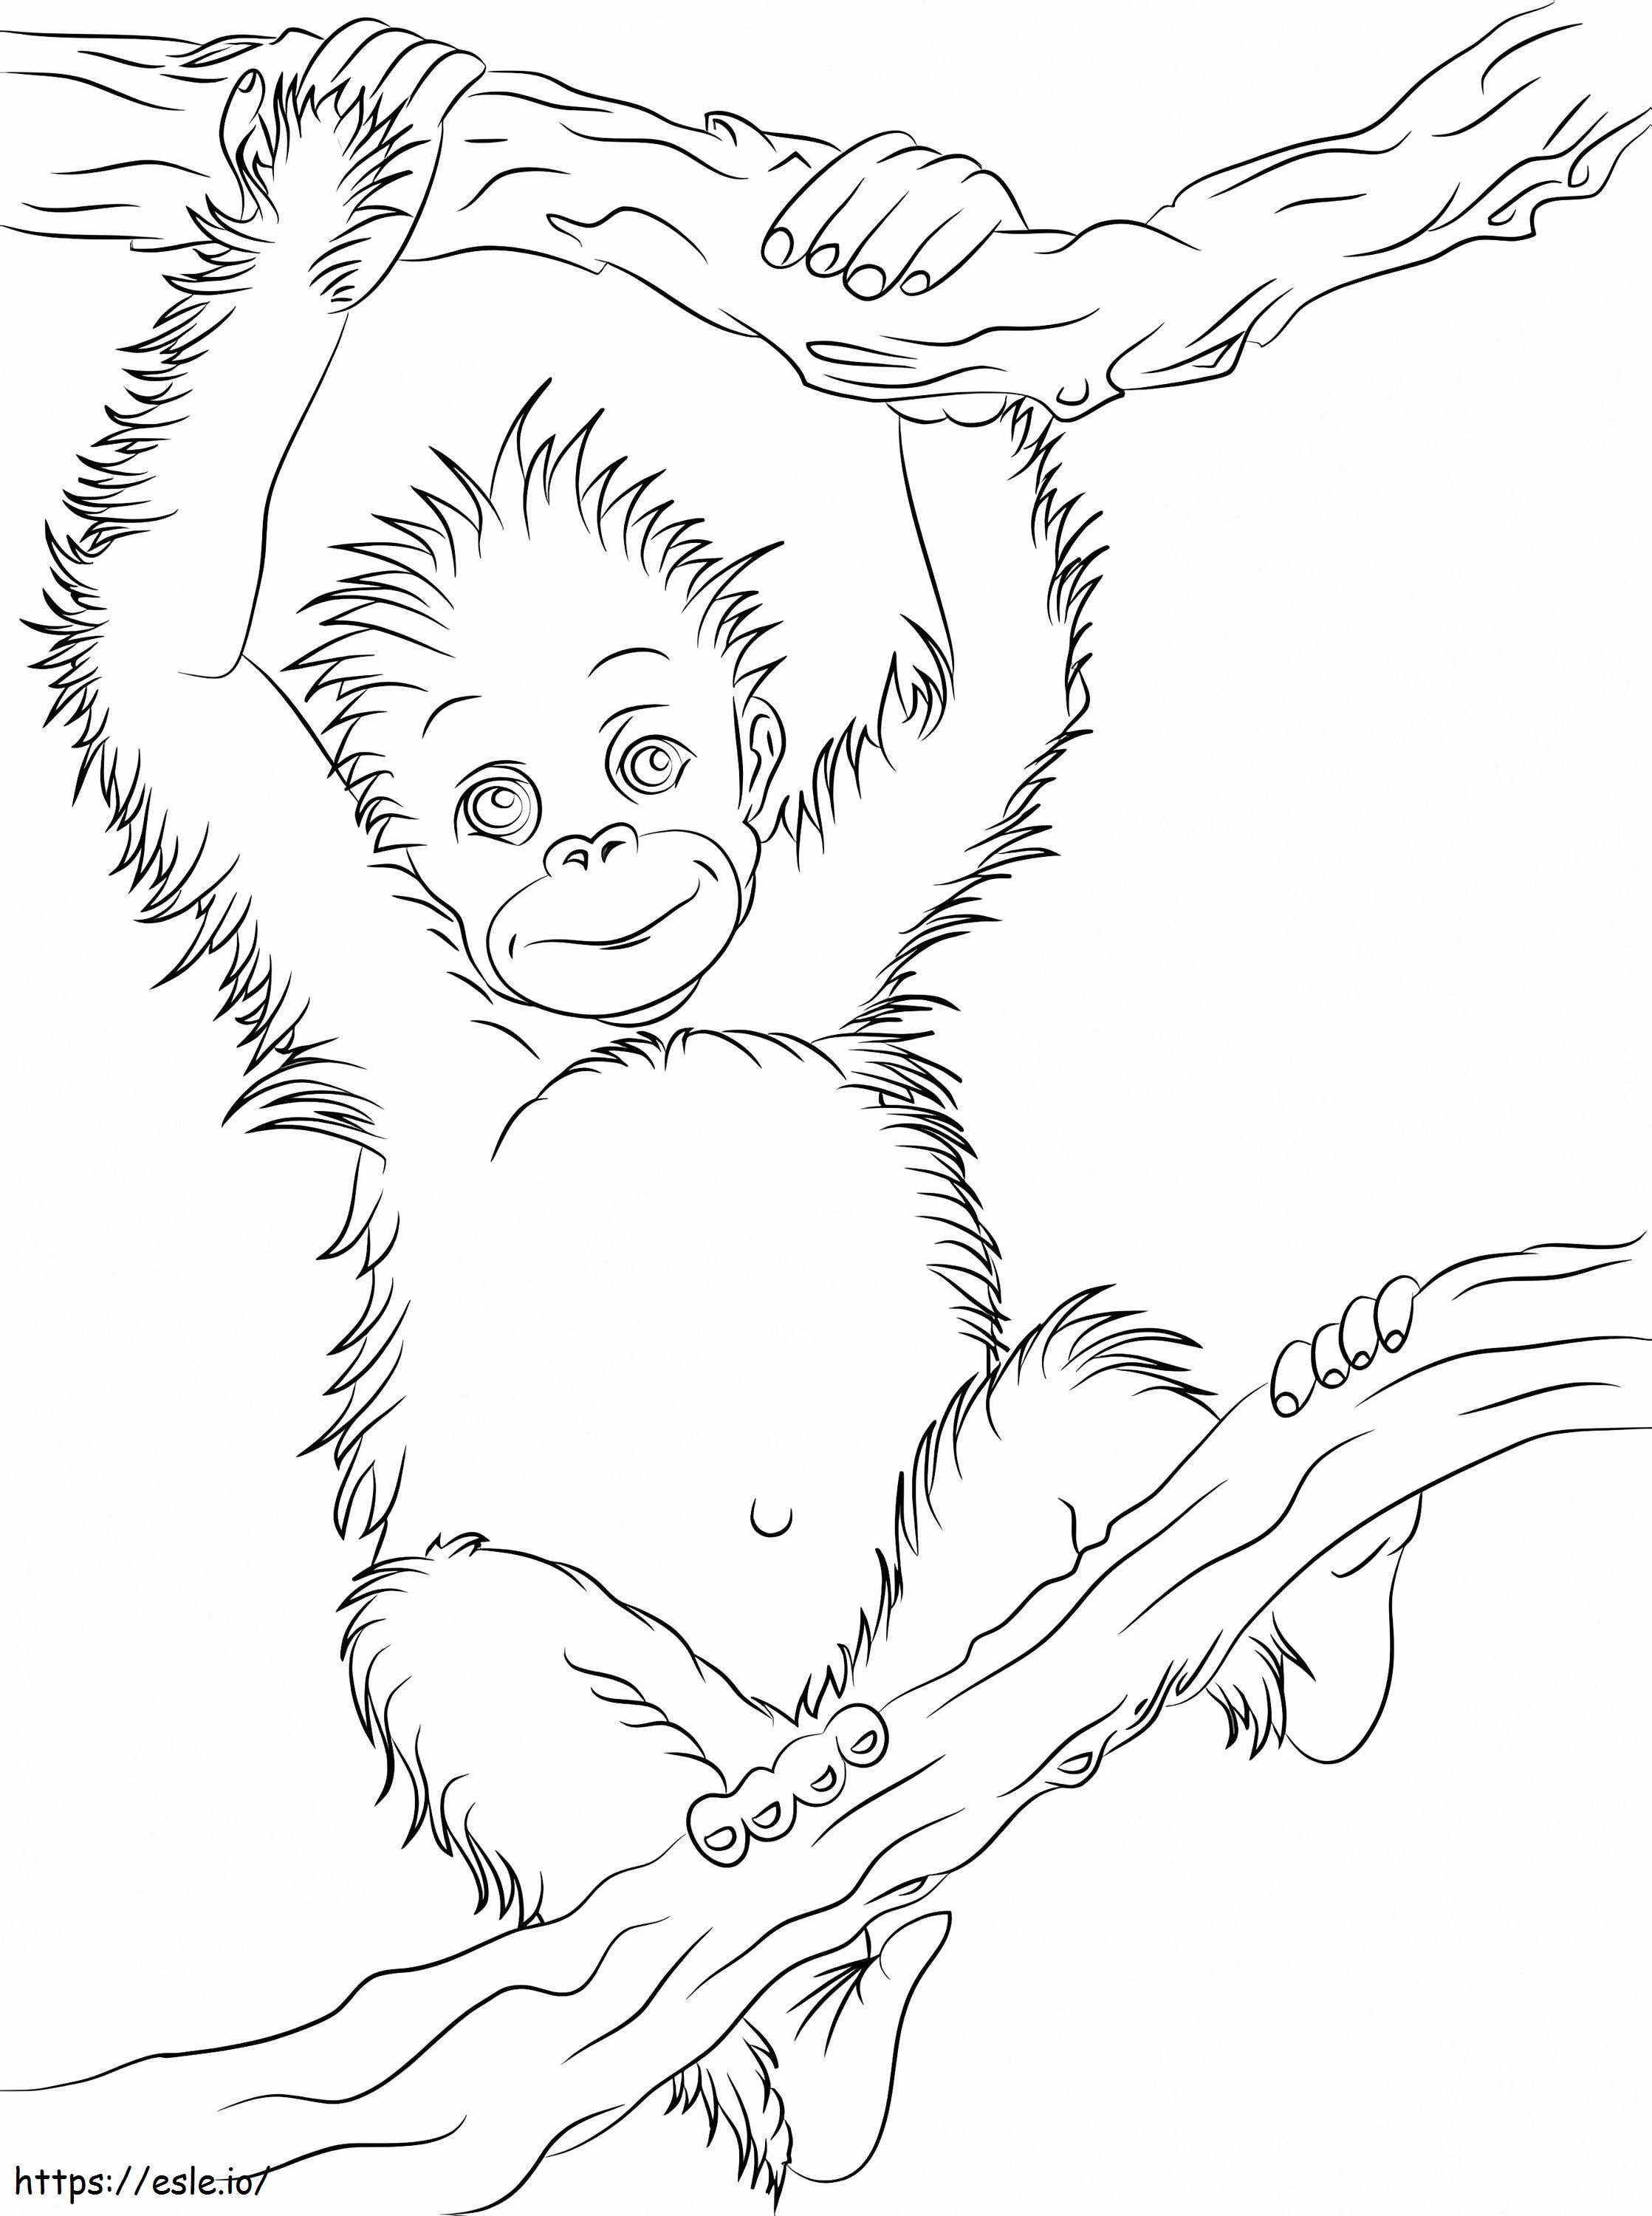 Kleine orang-oetan die een tak beklimt kleurplaat kleurplaat